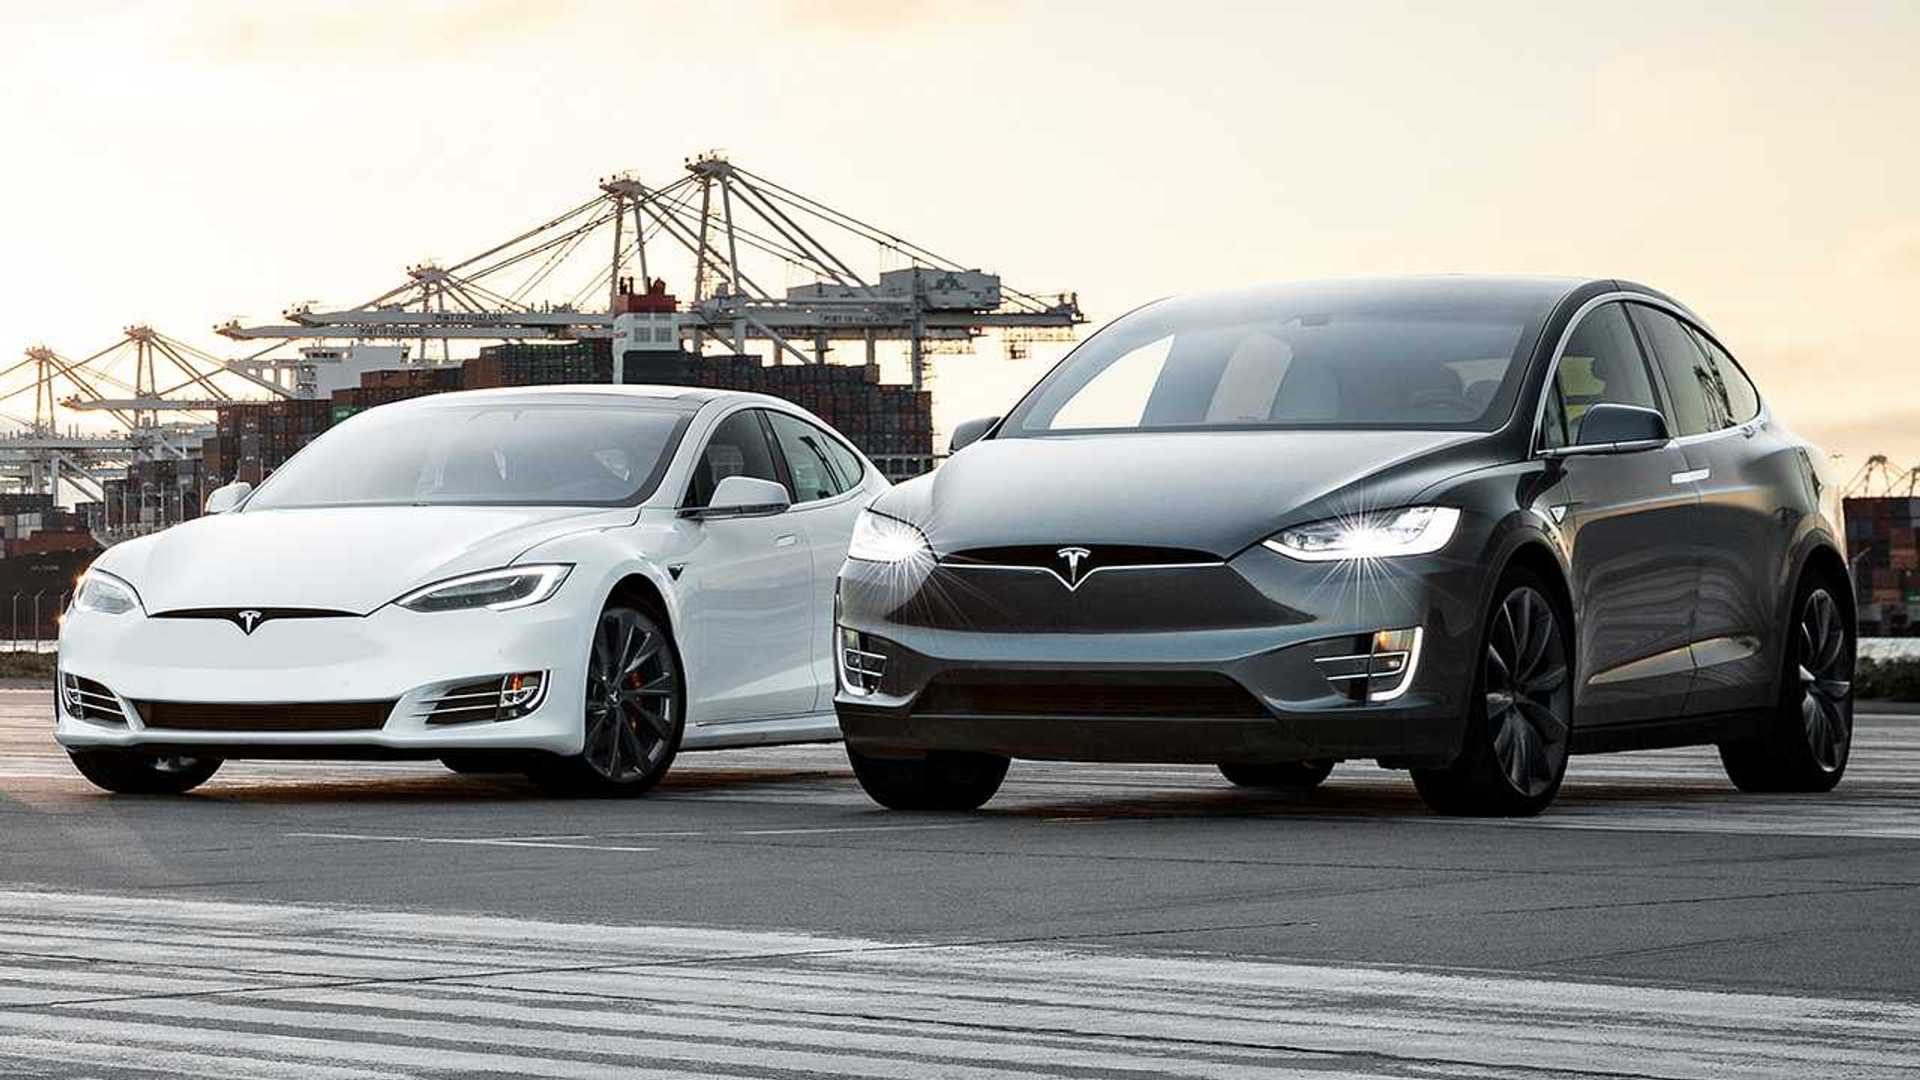 Tesla znów obniża ceny samochodów elektrycznych - Model X spada o 10 tys. dolarów, Model S o 5 tys. dolarów